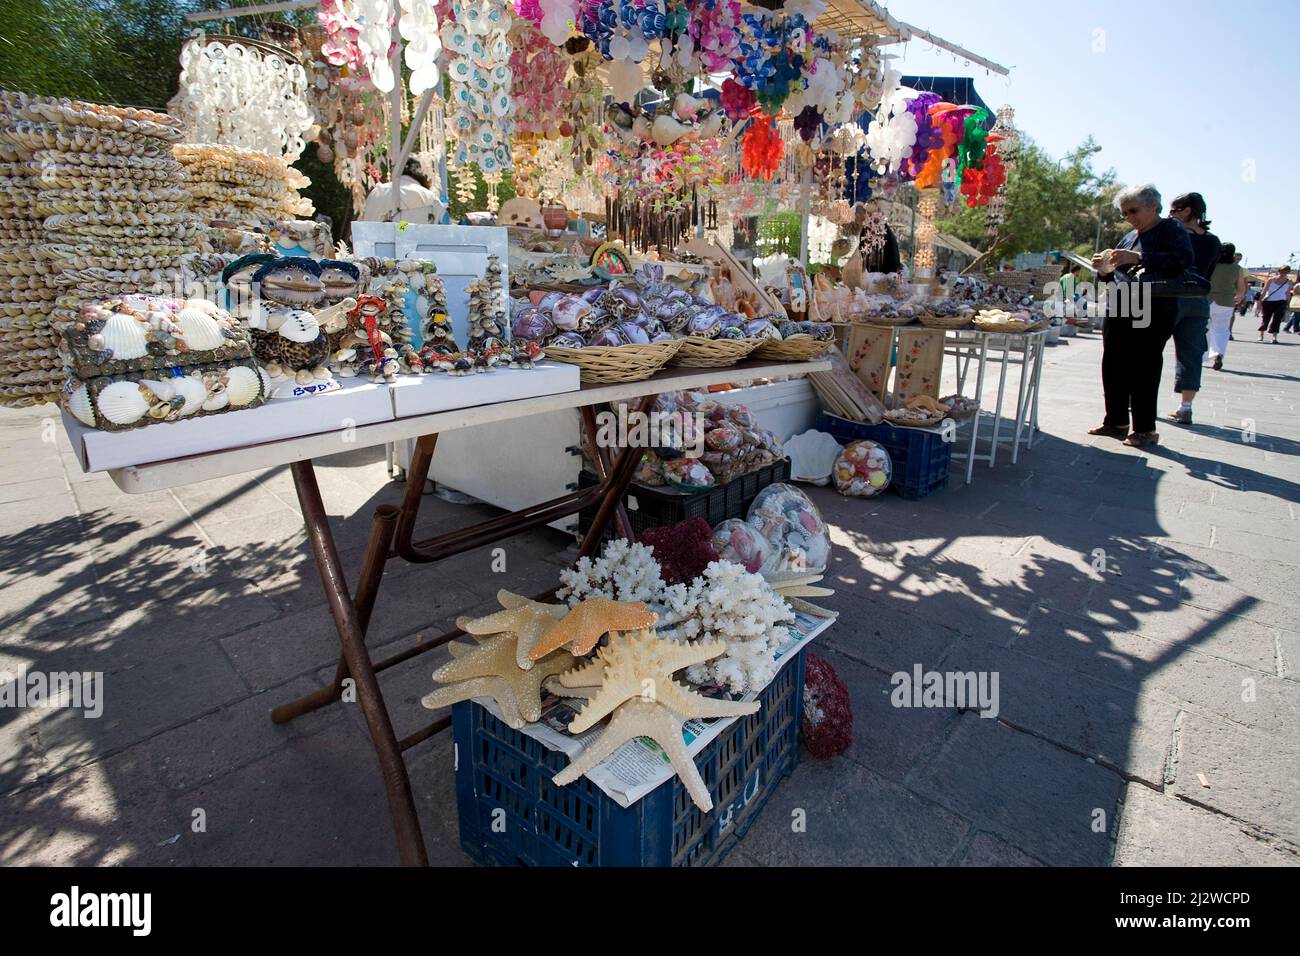 Shop verkauft tote Meerestiere und Muscheln als Souvenirs, Bodrum, Ägäis, Türkei, Mittelmeer Stockfoto